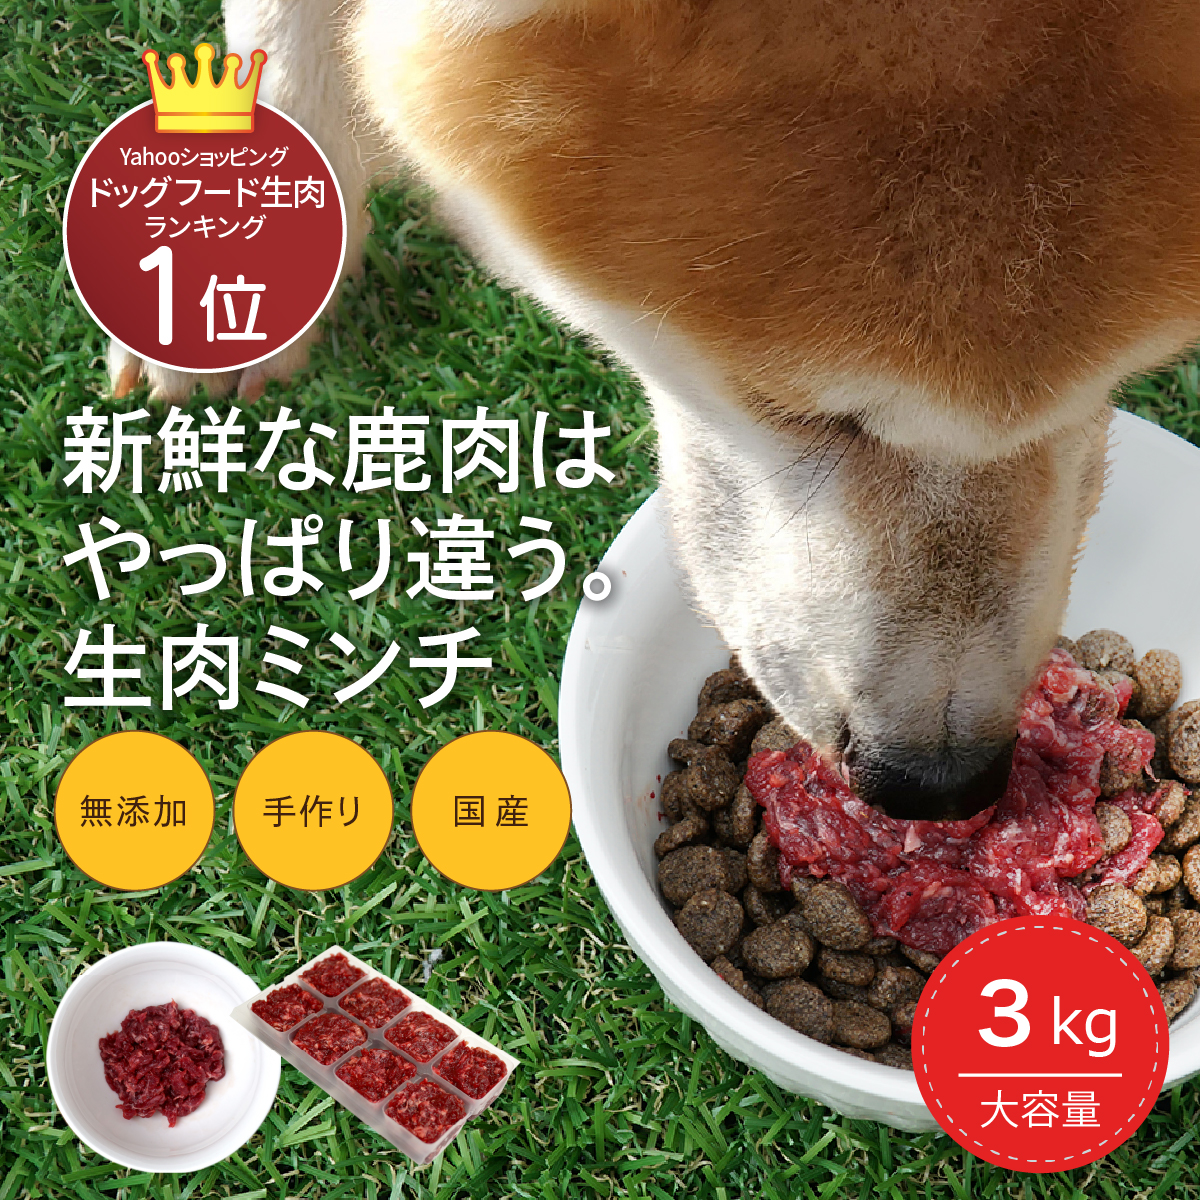 犬用 国産 鹿肉 3kg(25g×120個) 小分けトレー 無添加 生肉 アレルギー対策 食いつき改善 健康づくり 自社加工 高タンパク 低脂肪